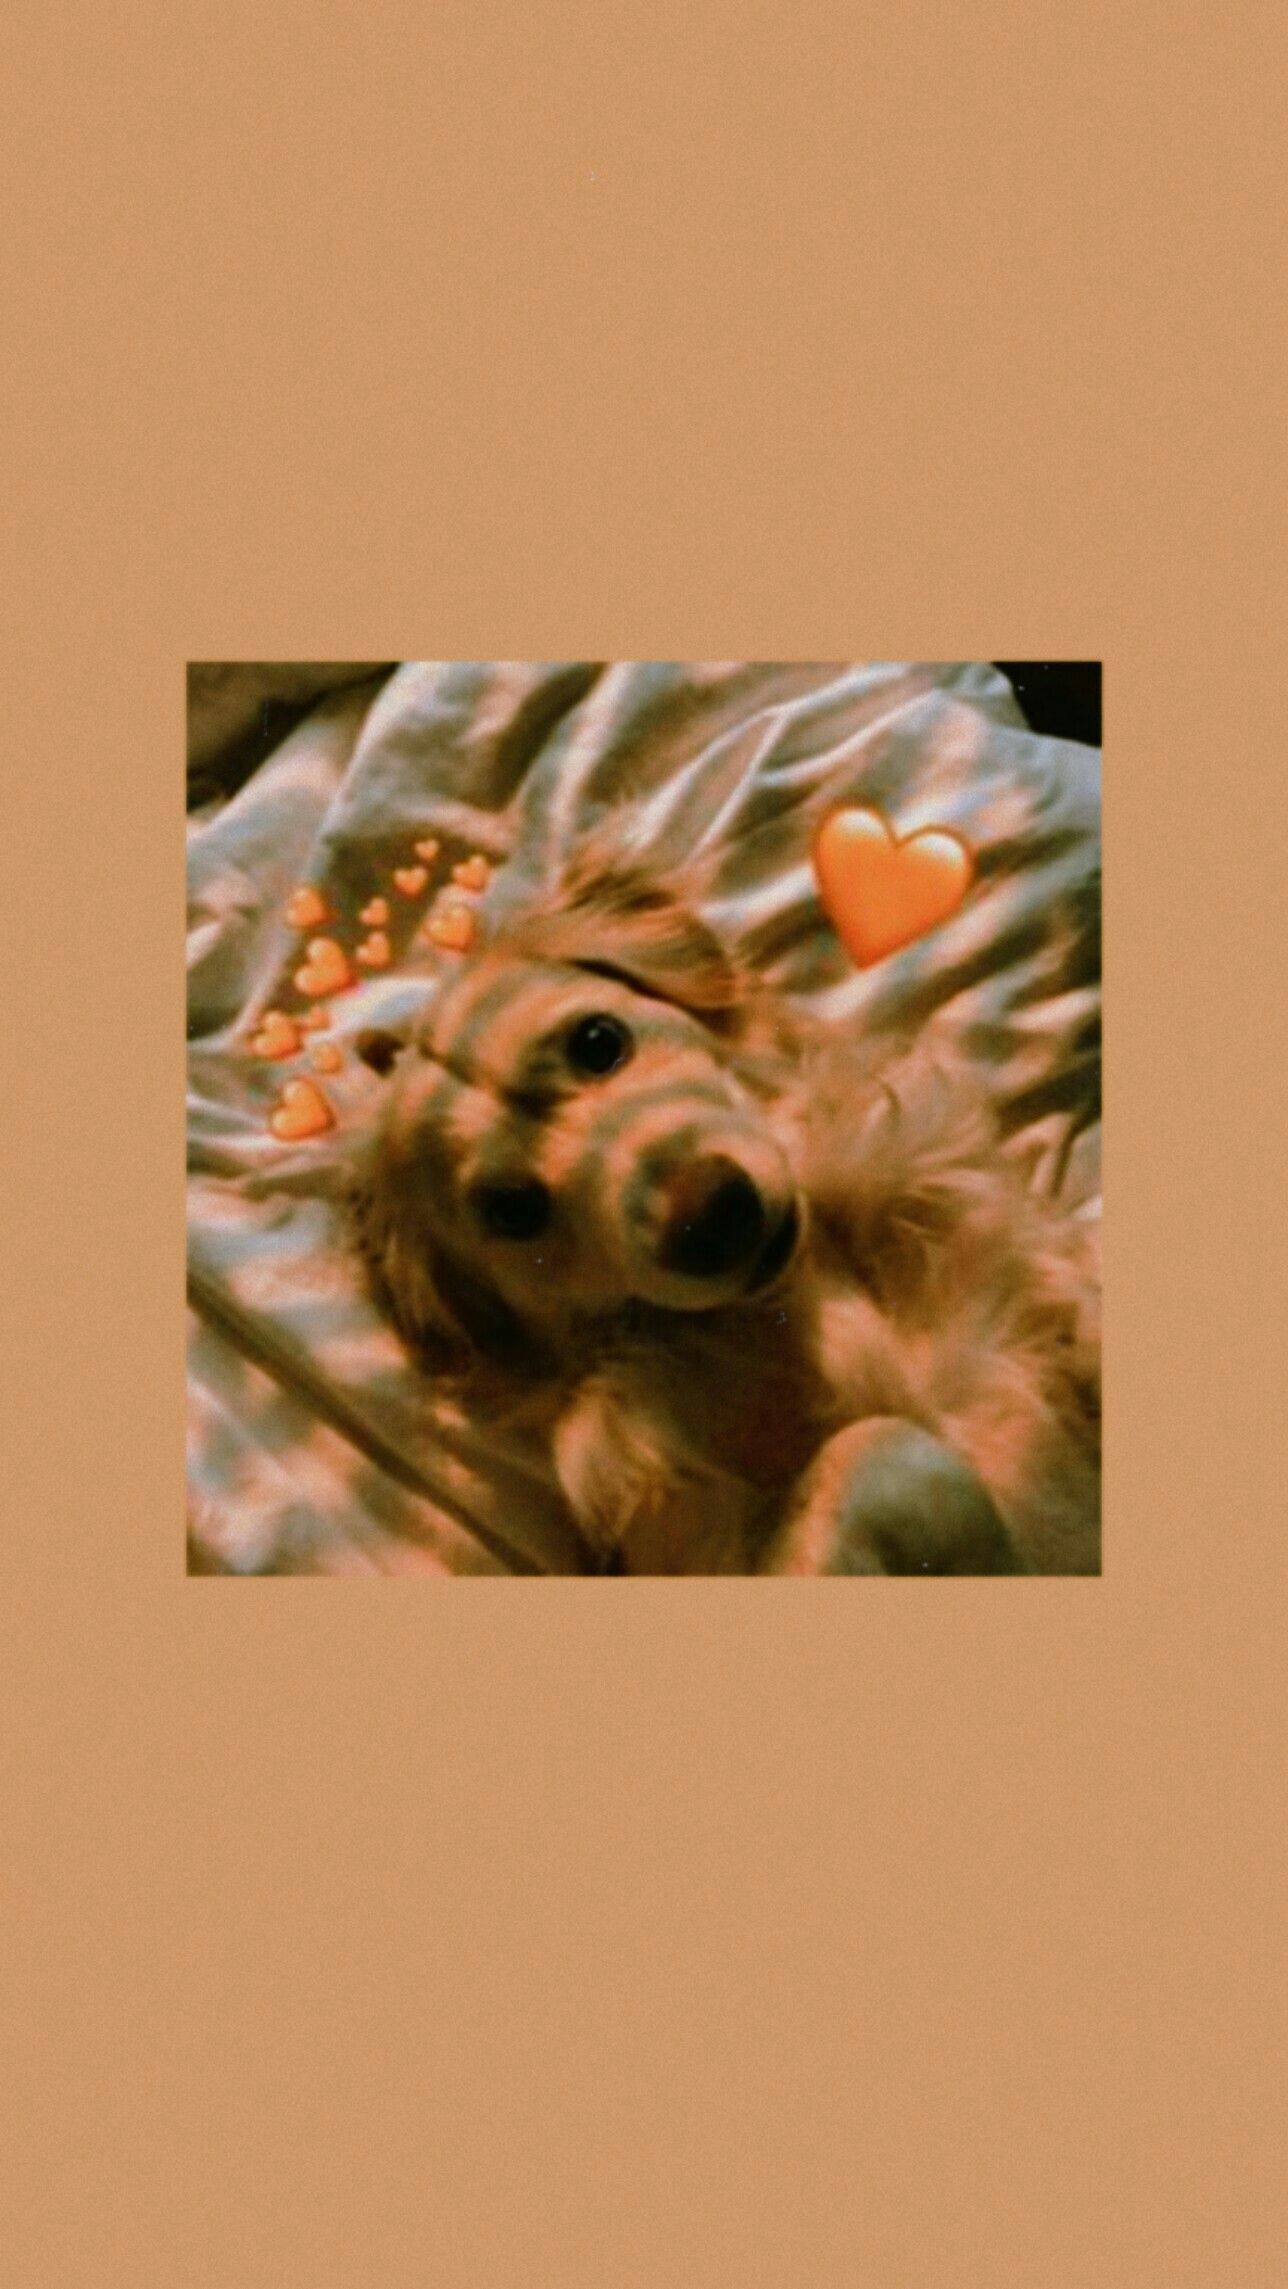  Süße Hunde Hintergrundbild 1288x2289. Cute Aesthetic Dog Wallpaper. Cute puppy wallpaper, Puppy wallpaper iphone, Animal wallpaper